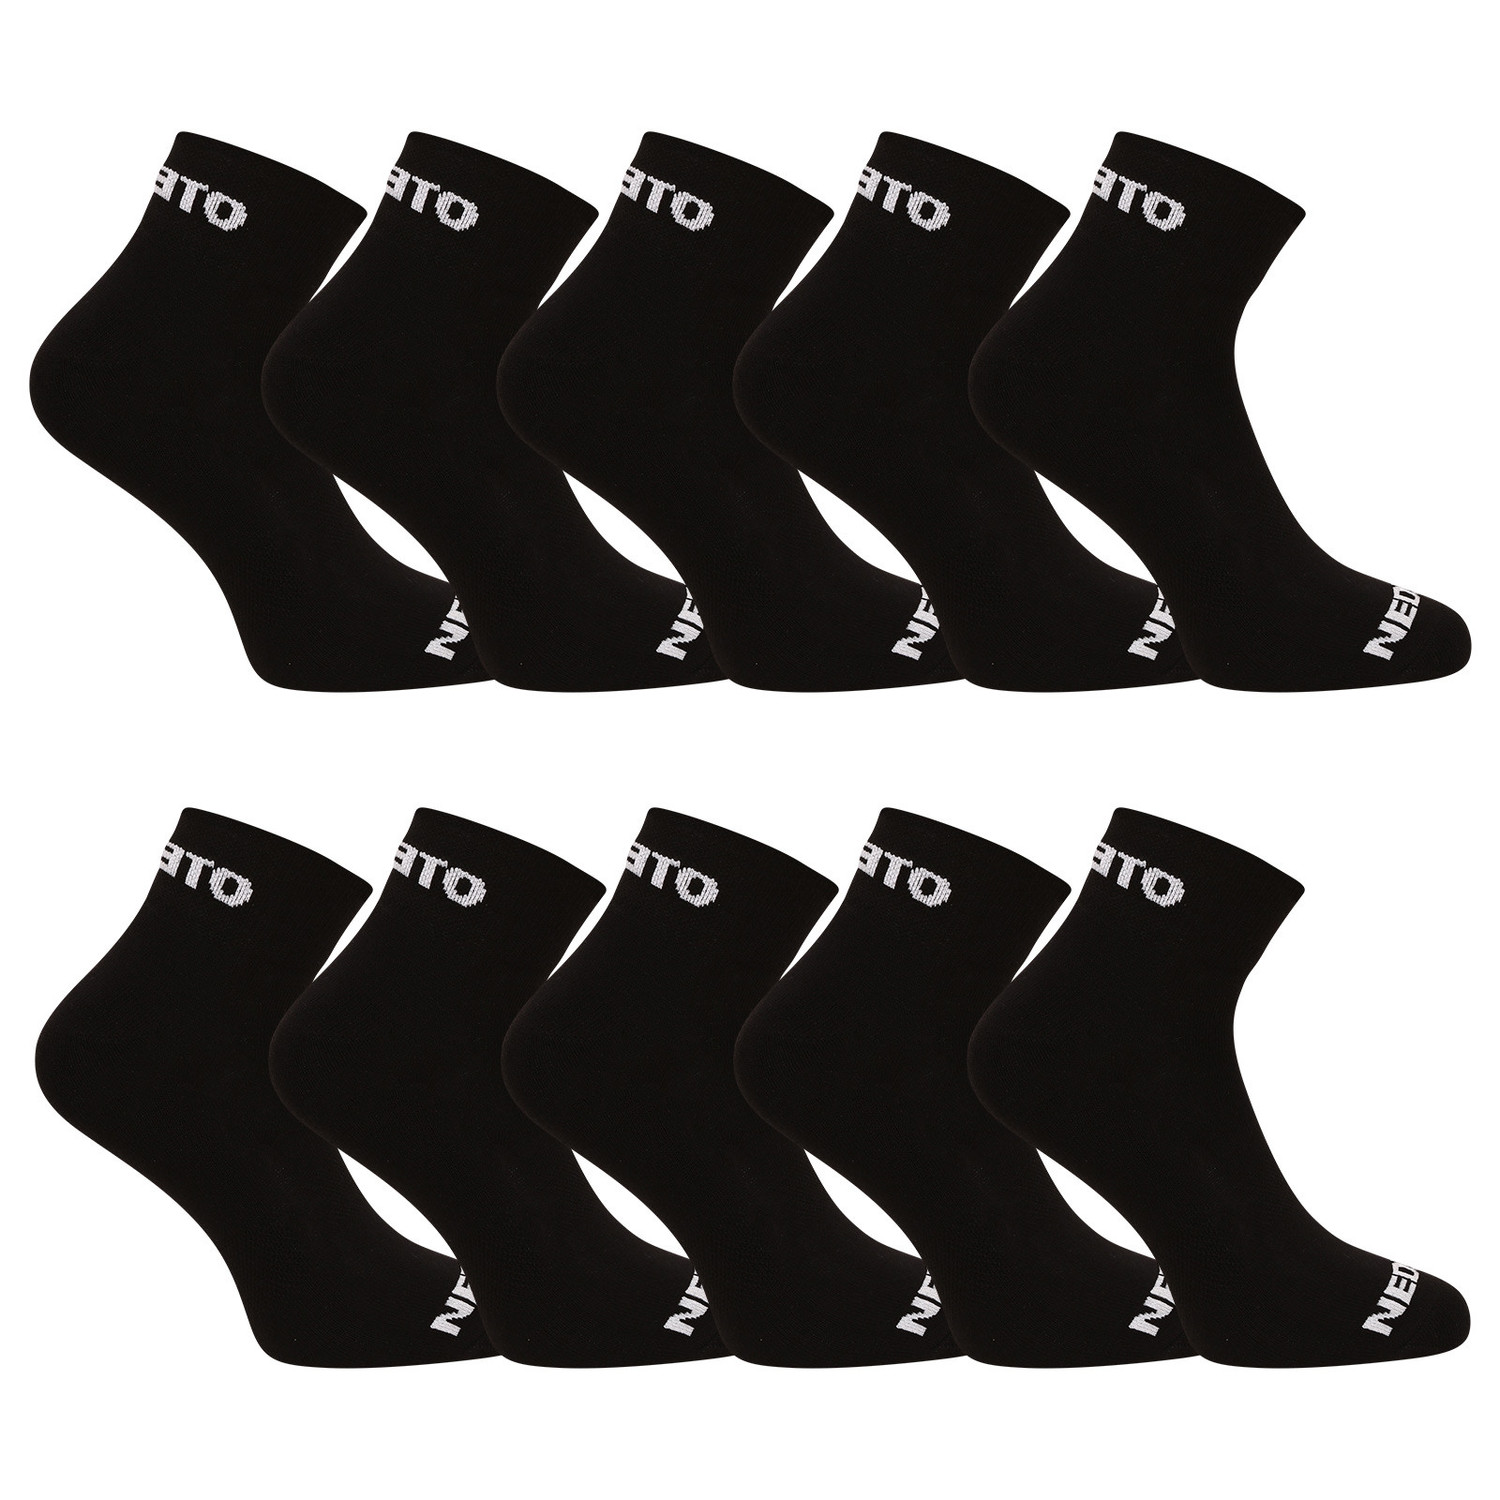 10PACK ponožky Nedeto kotníkové černé (10NDTPK001-brand) M